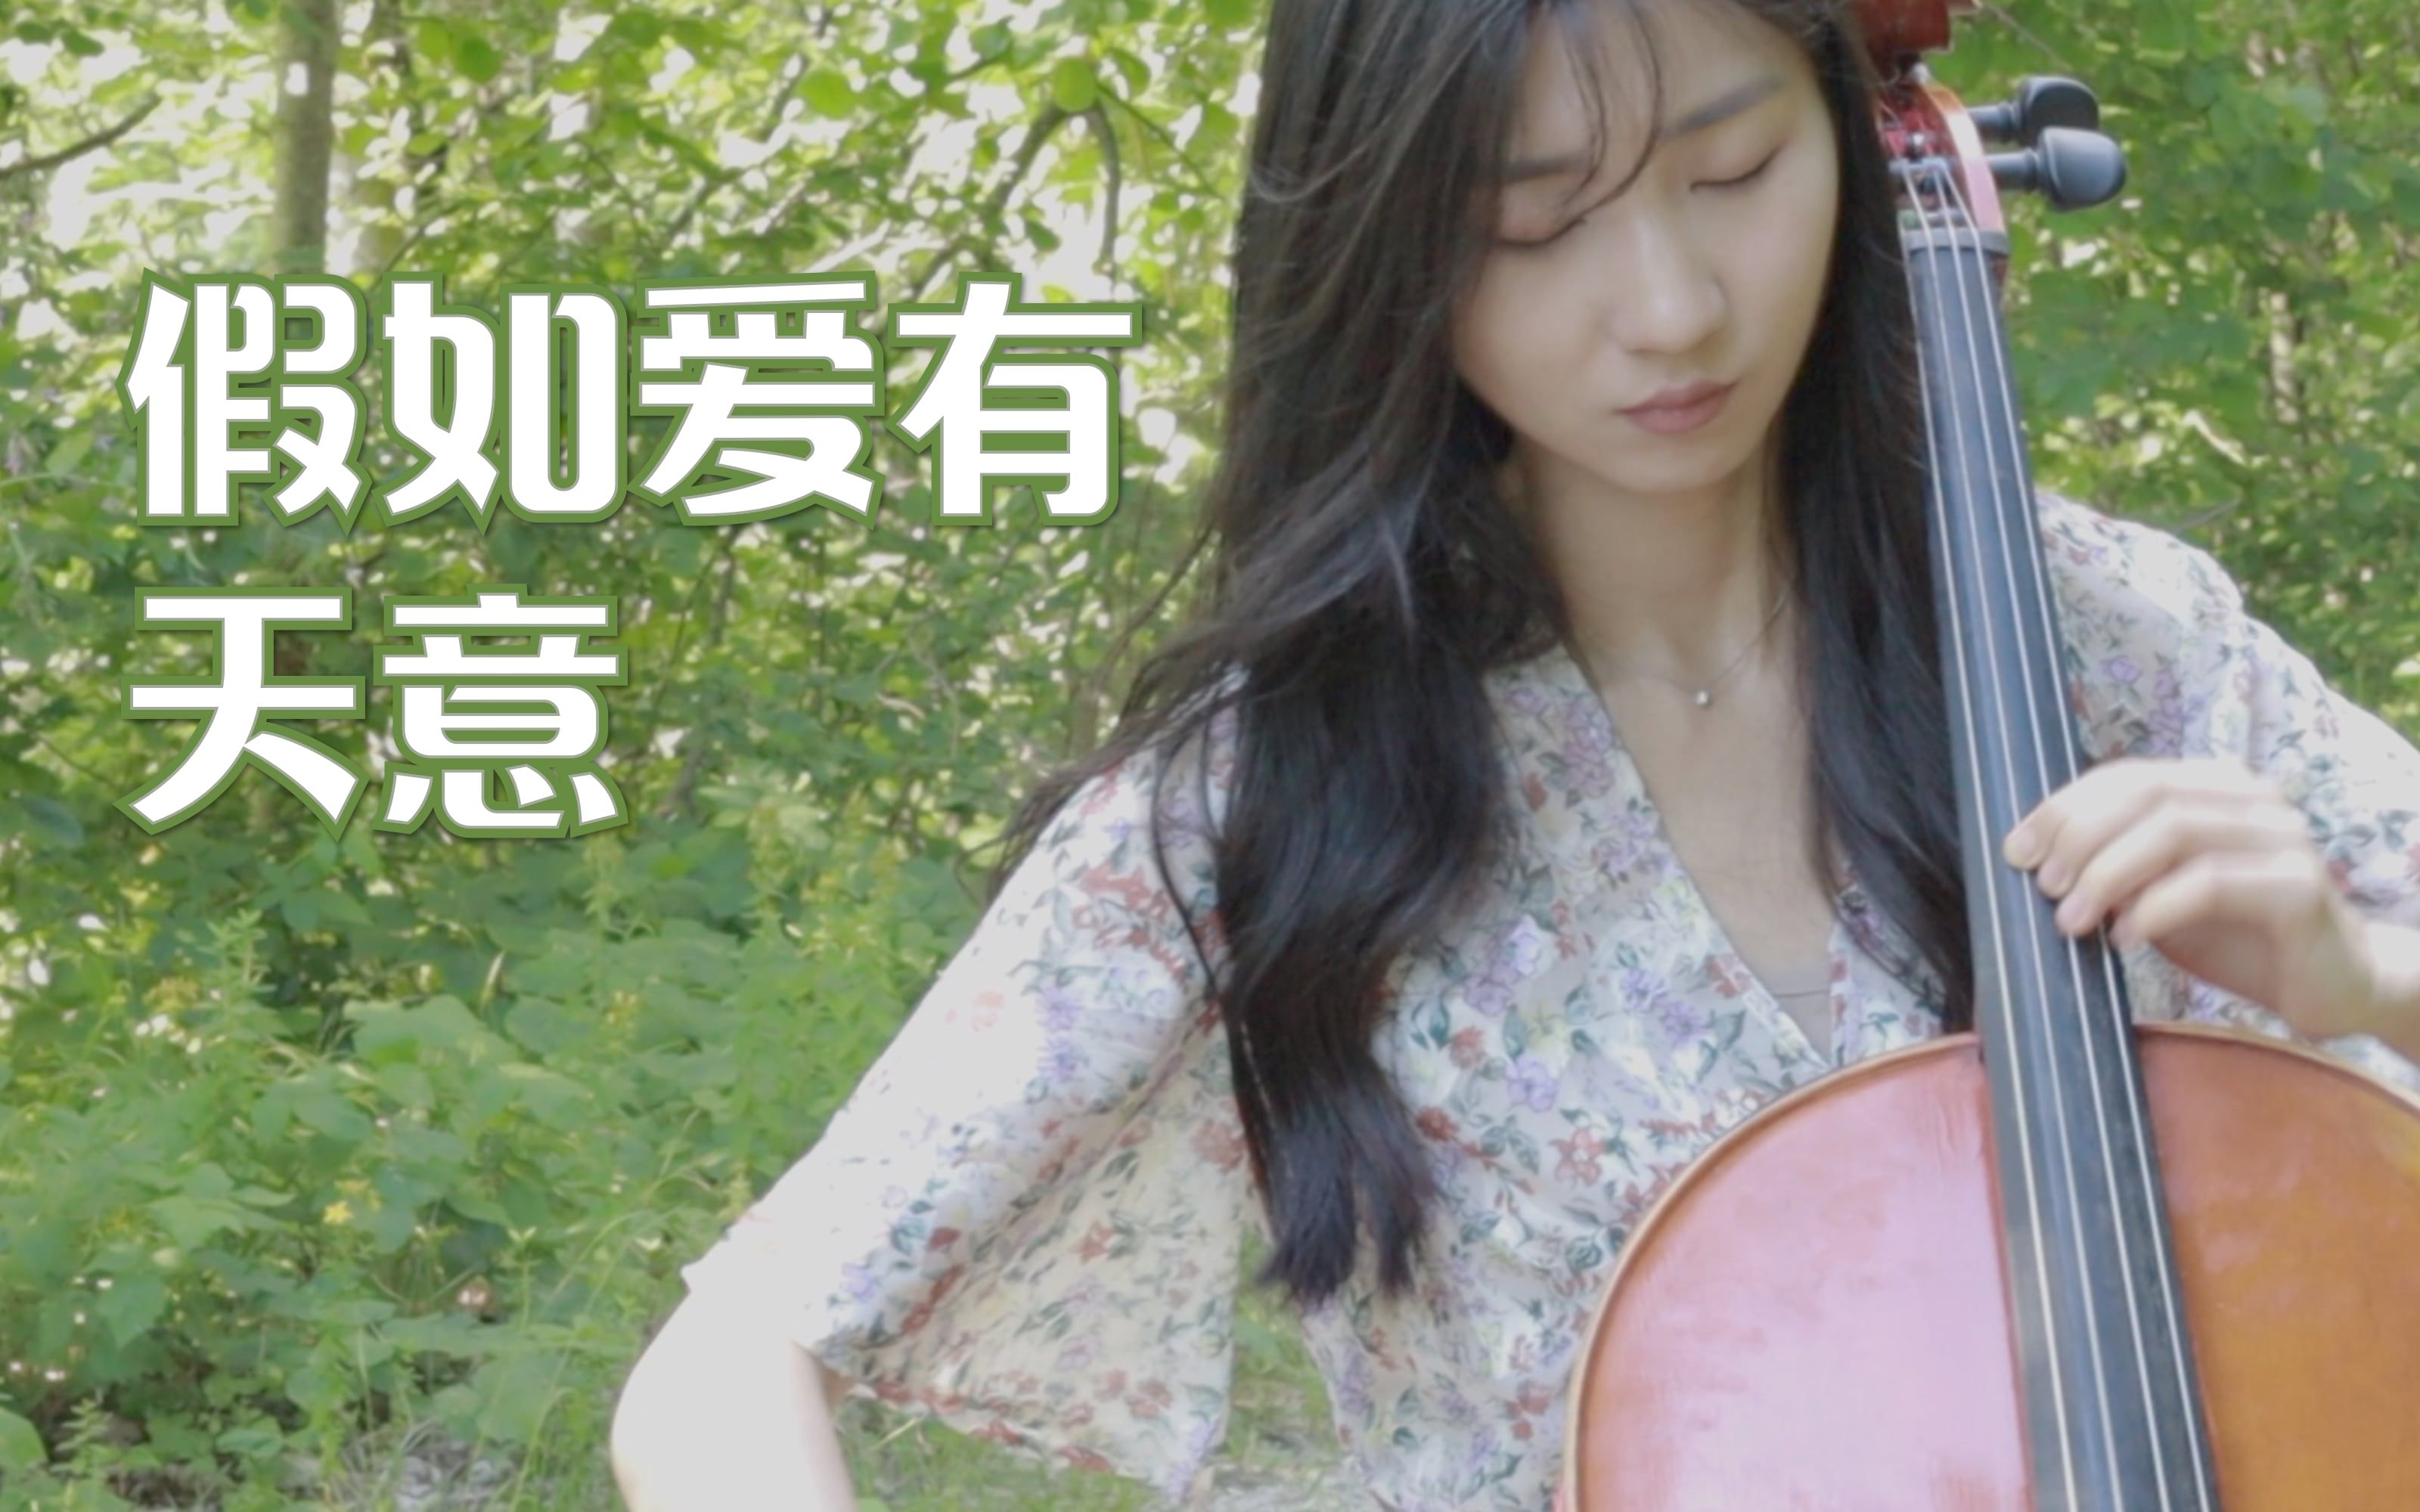 大提琴《假如爱有天意》cover：李健丨当天边那颗星出现 你可知我又开始想念